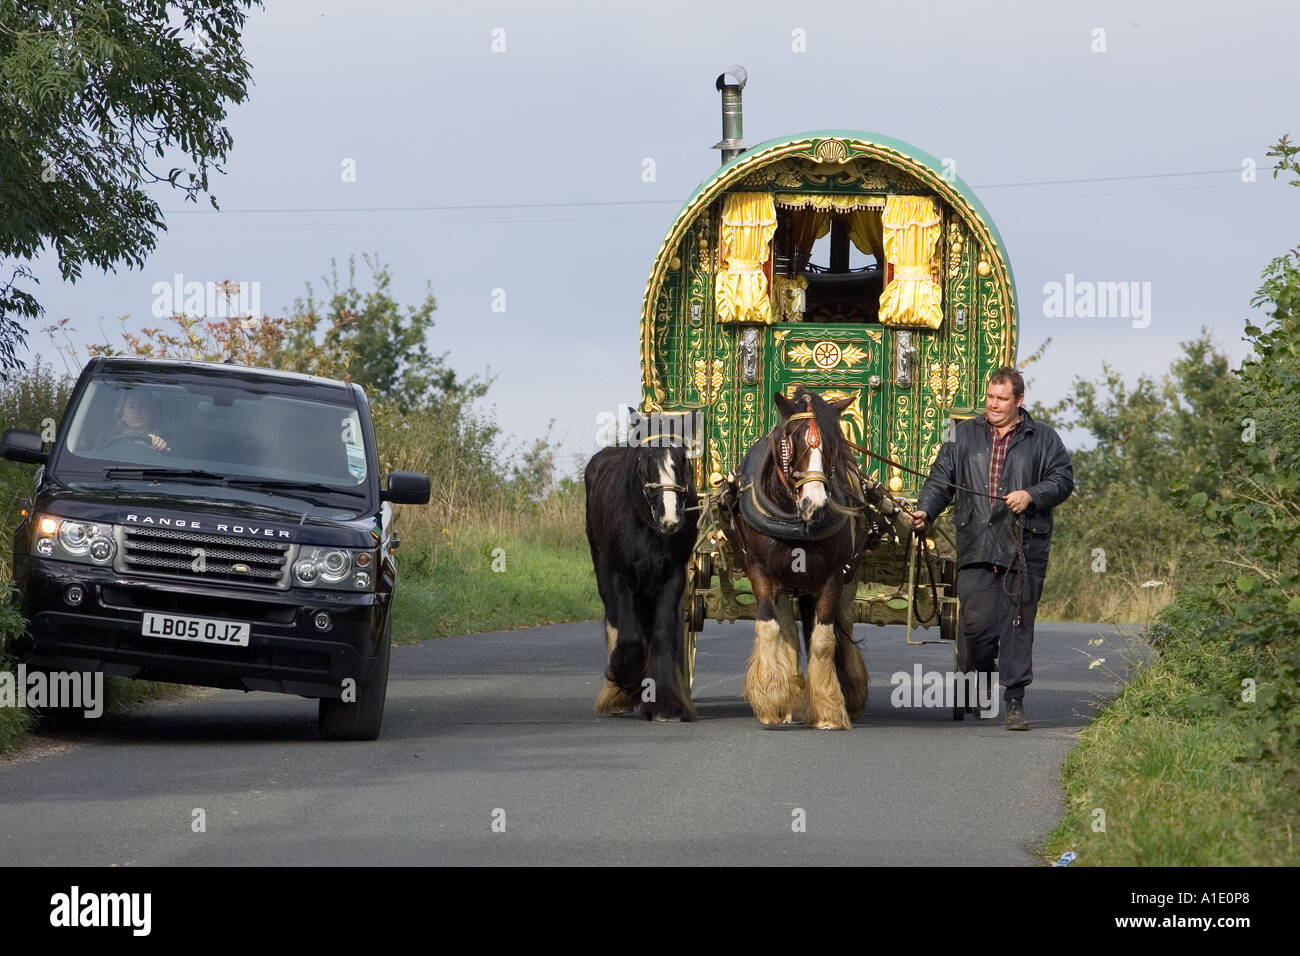 Range Rover auto supera shire cavallo gypsy caravan sul paese lane Stow on the Wold Gloucestershire Regno Unito Foto Stock